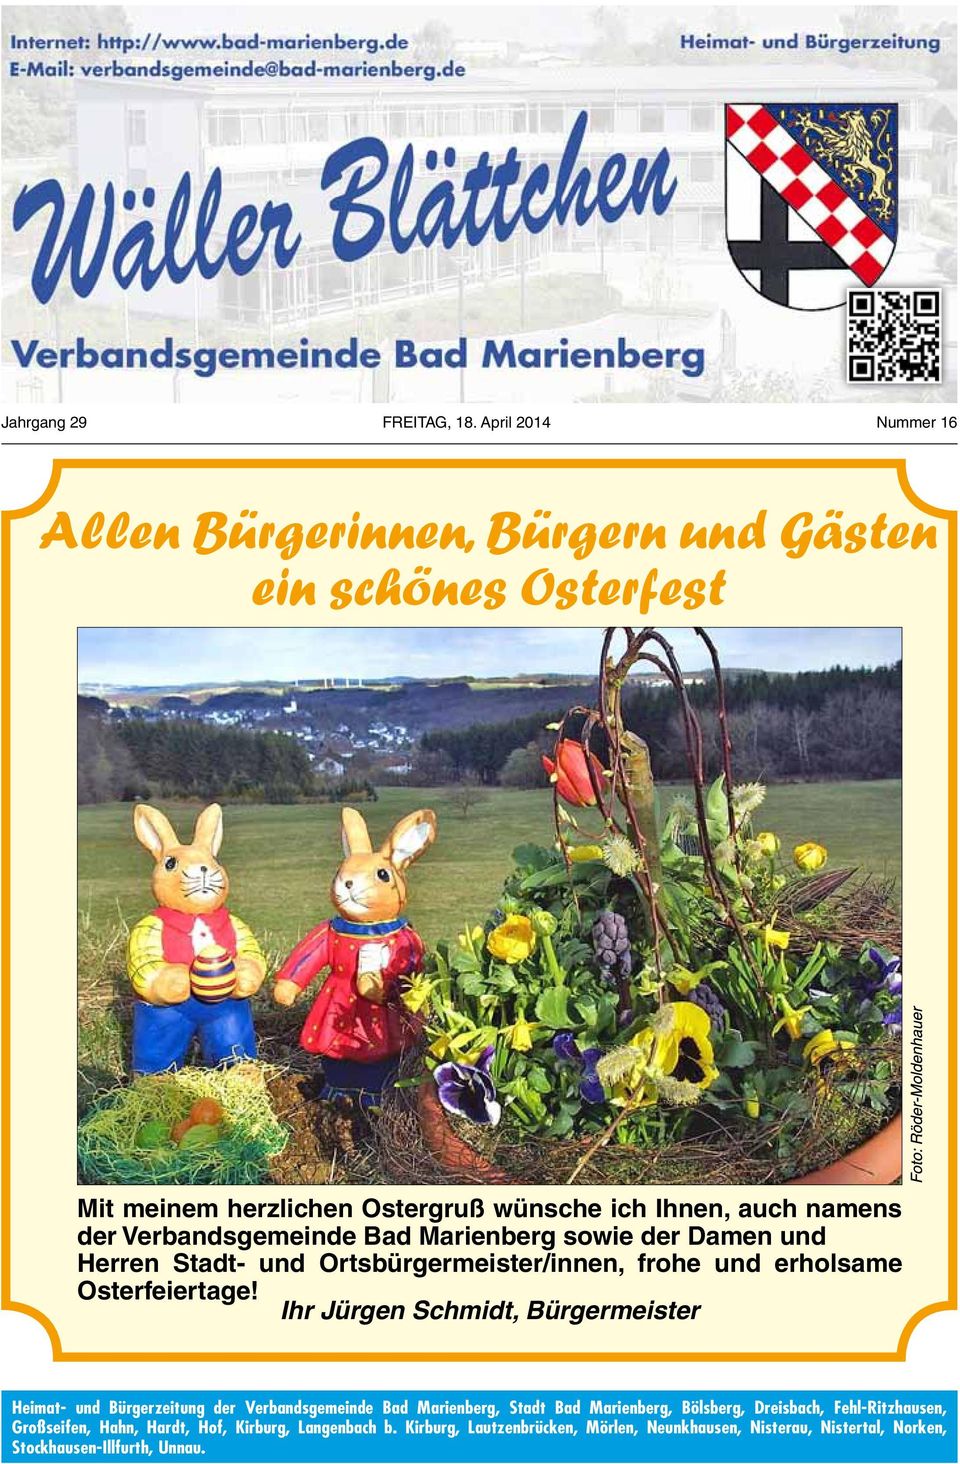 Verbandsgemeinde Bad Marienberg sowie der Damen und Herren Stadt- und Ortsbürgermeister/innen, frohe und erholsame Osterfeiertage!